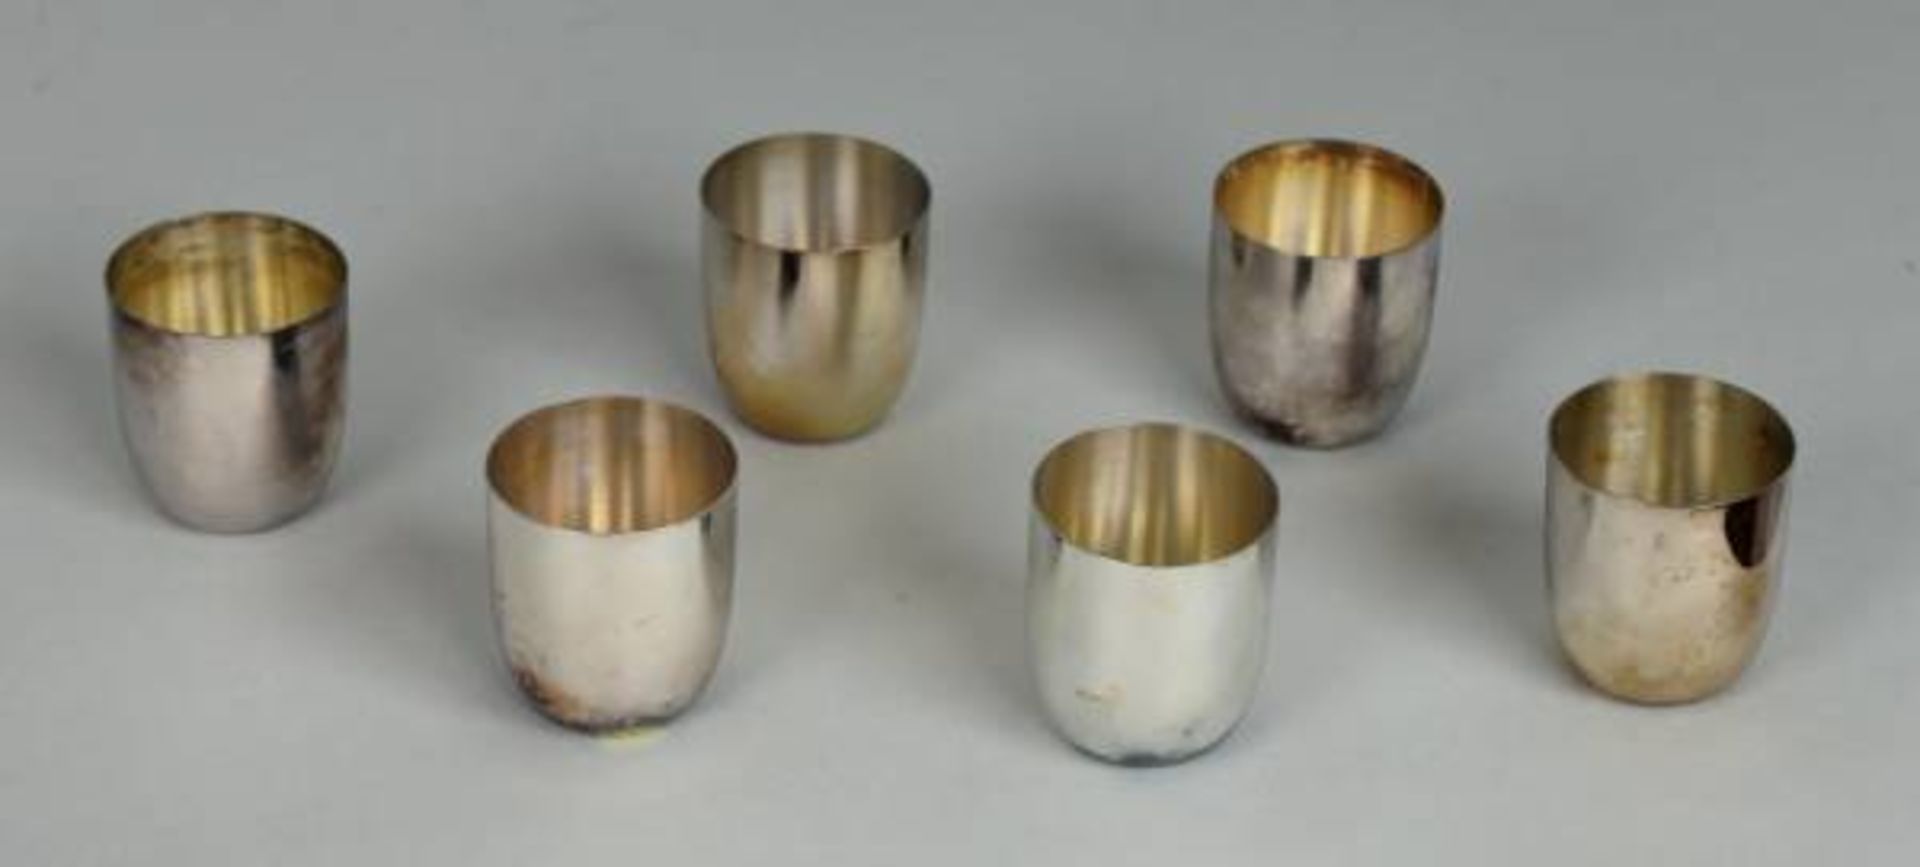 6 SCHNAPSBECHER rund und zylindrisch, Silber 800, 123 g, H 4cm6 SCHNAPSBECHER rund und